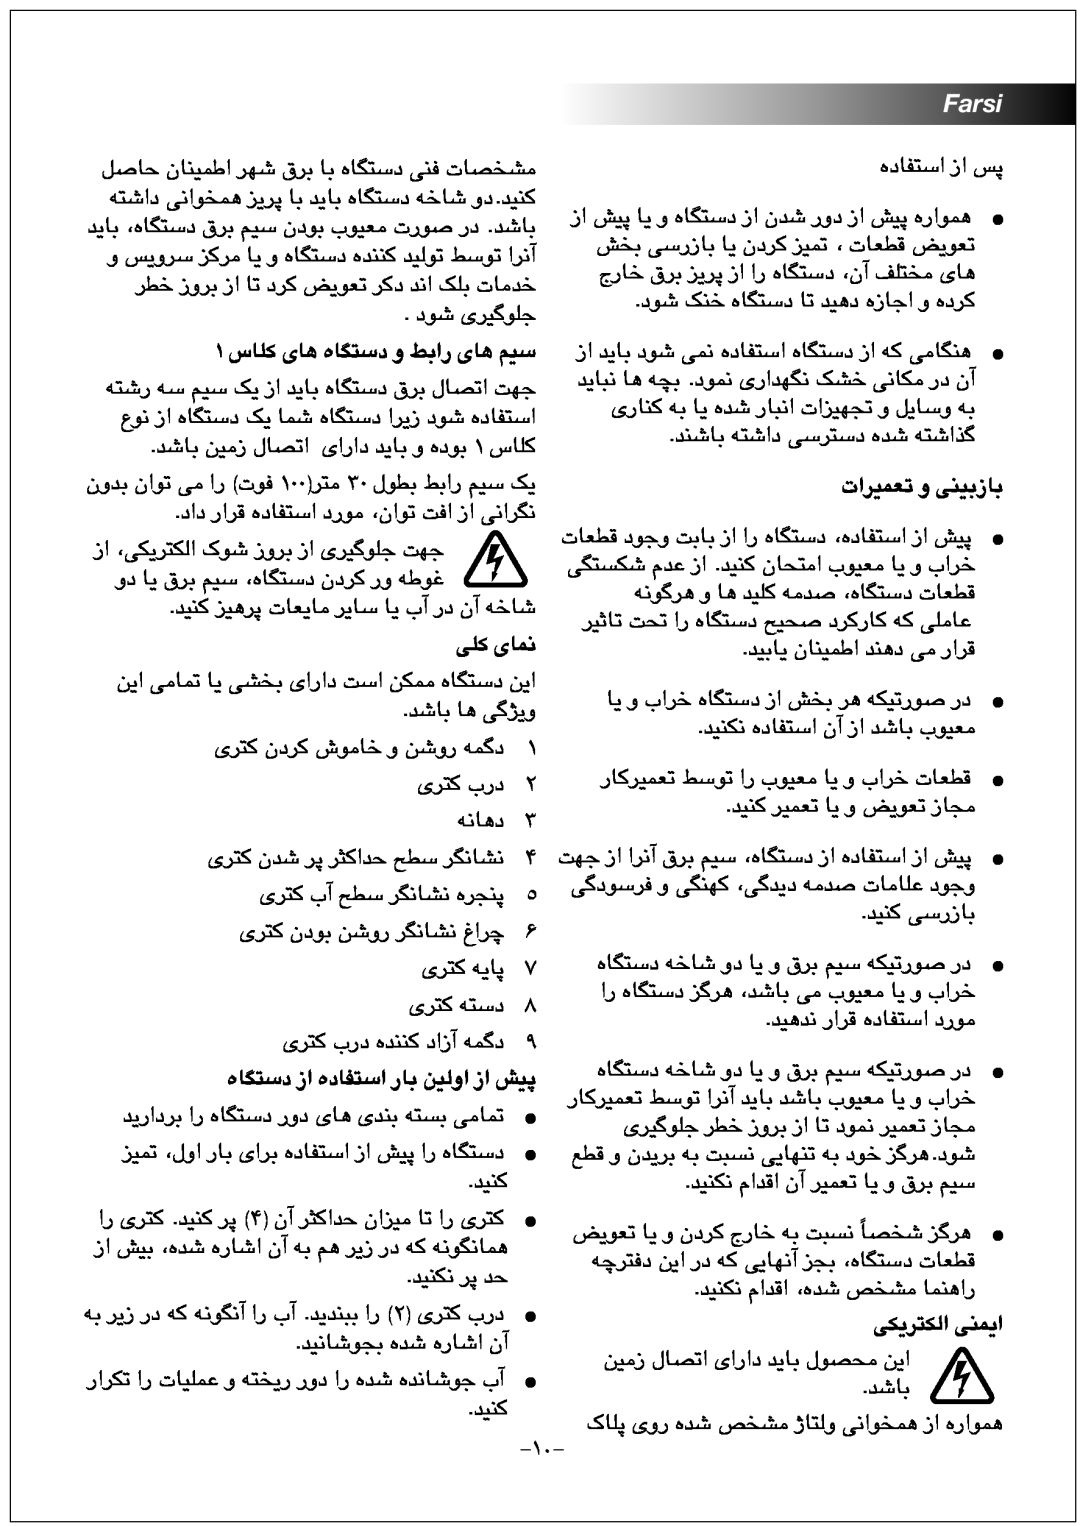 Black & Decker JC100 manual Farsi, ۱ ﺱﺎﻠﮐ ﯼﺎﻫ ﻩﺎﮕﺘﺳﺩ ﻭ ﻂﺑﺍﺭ ﯼﺎﻫ ﻢﯿﺳ, ﺕﺍﺮﯿﻤﻌﺗ ﻭ ﯽﻨﯿﺑﺯﺎﺑ, ﯽﻠﮐ ﯼﺎﻤﻧ, ﯽﮑﯾﺮﺘﮑﻟﺍ ﯽﻨﻤﯾﺍ 